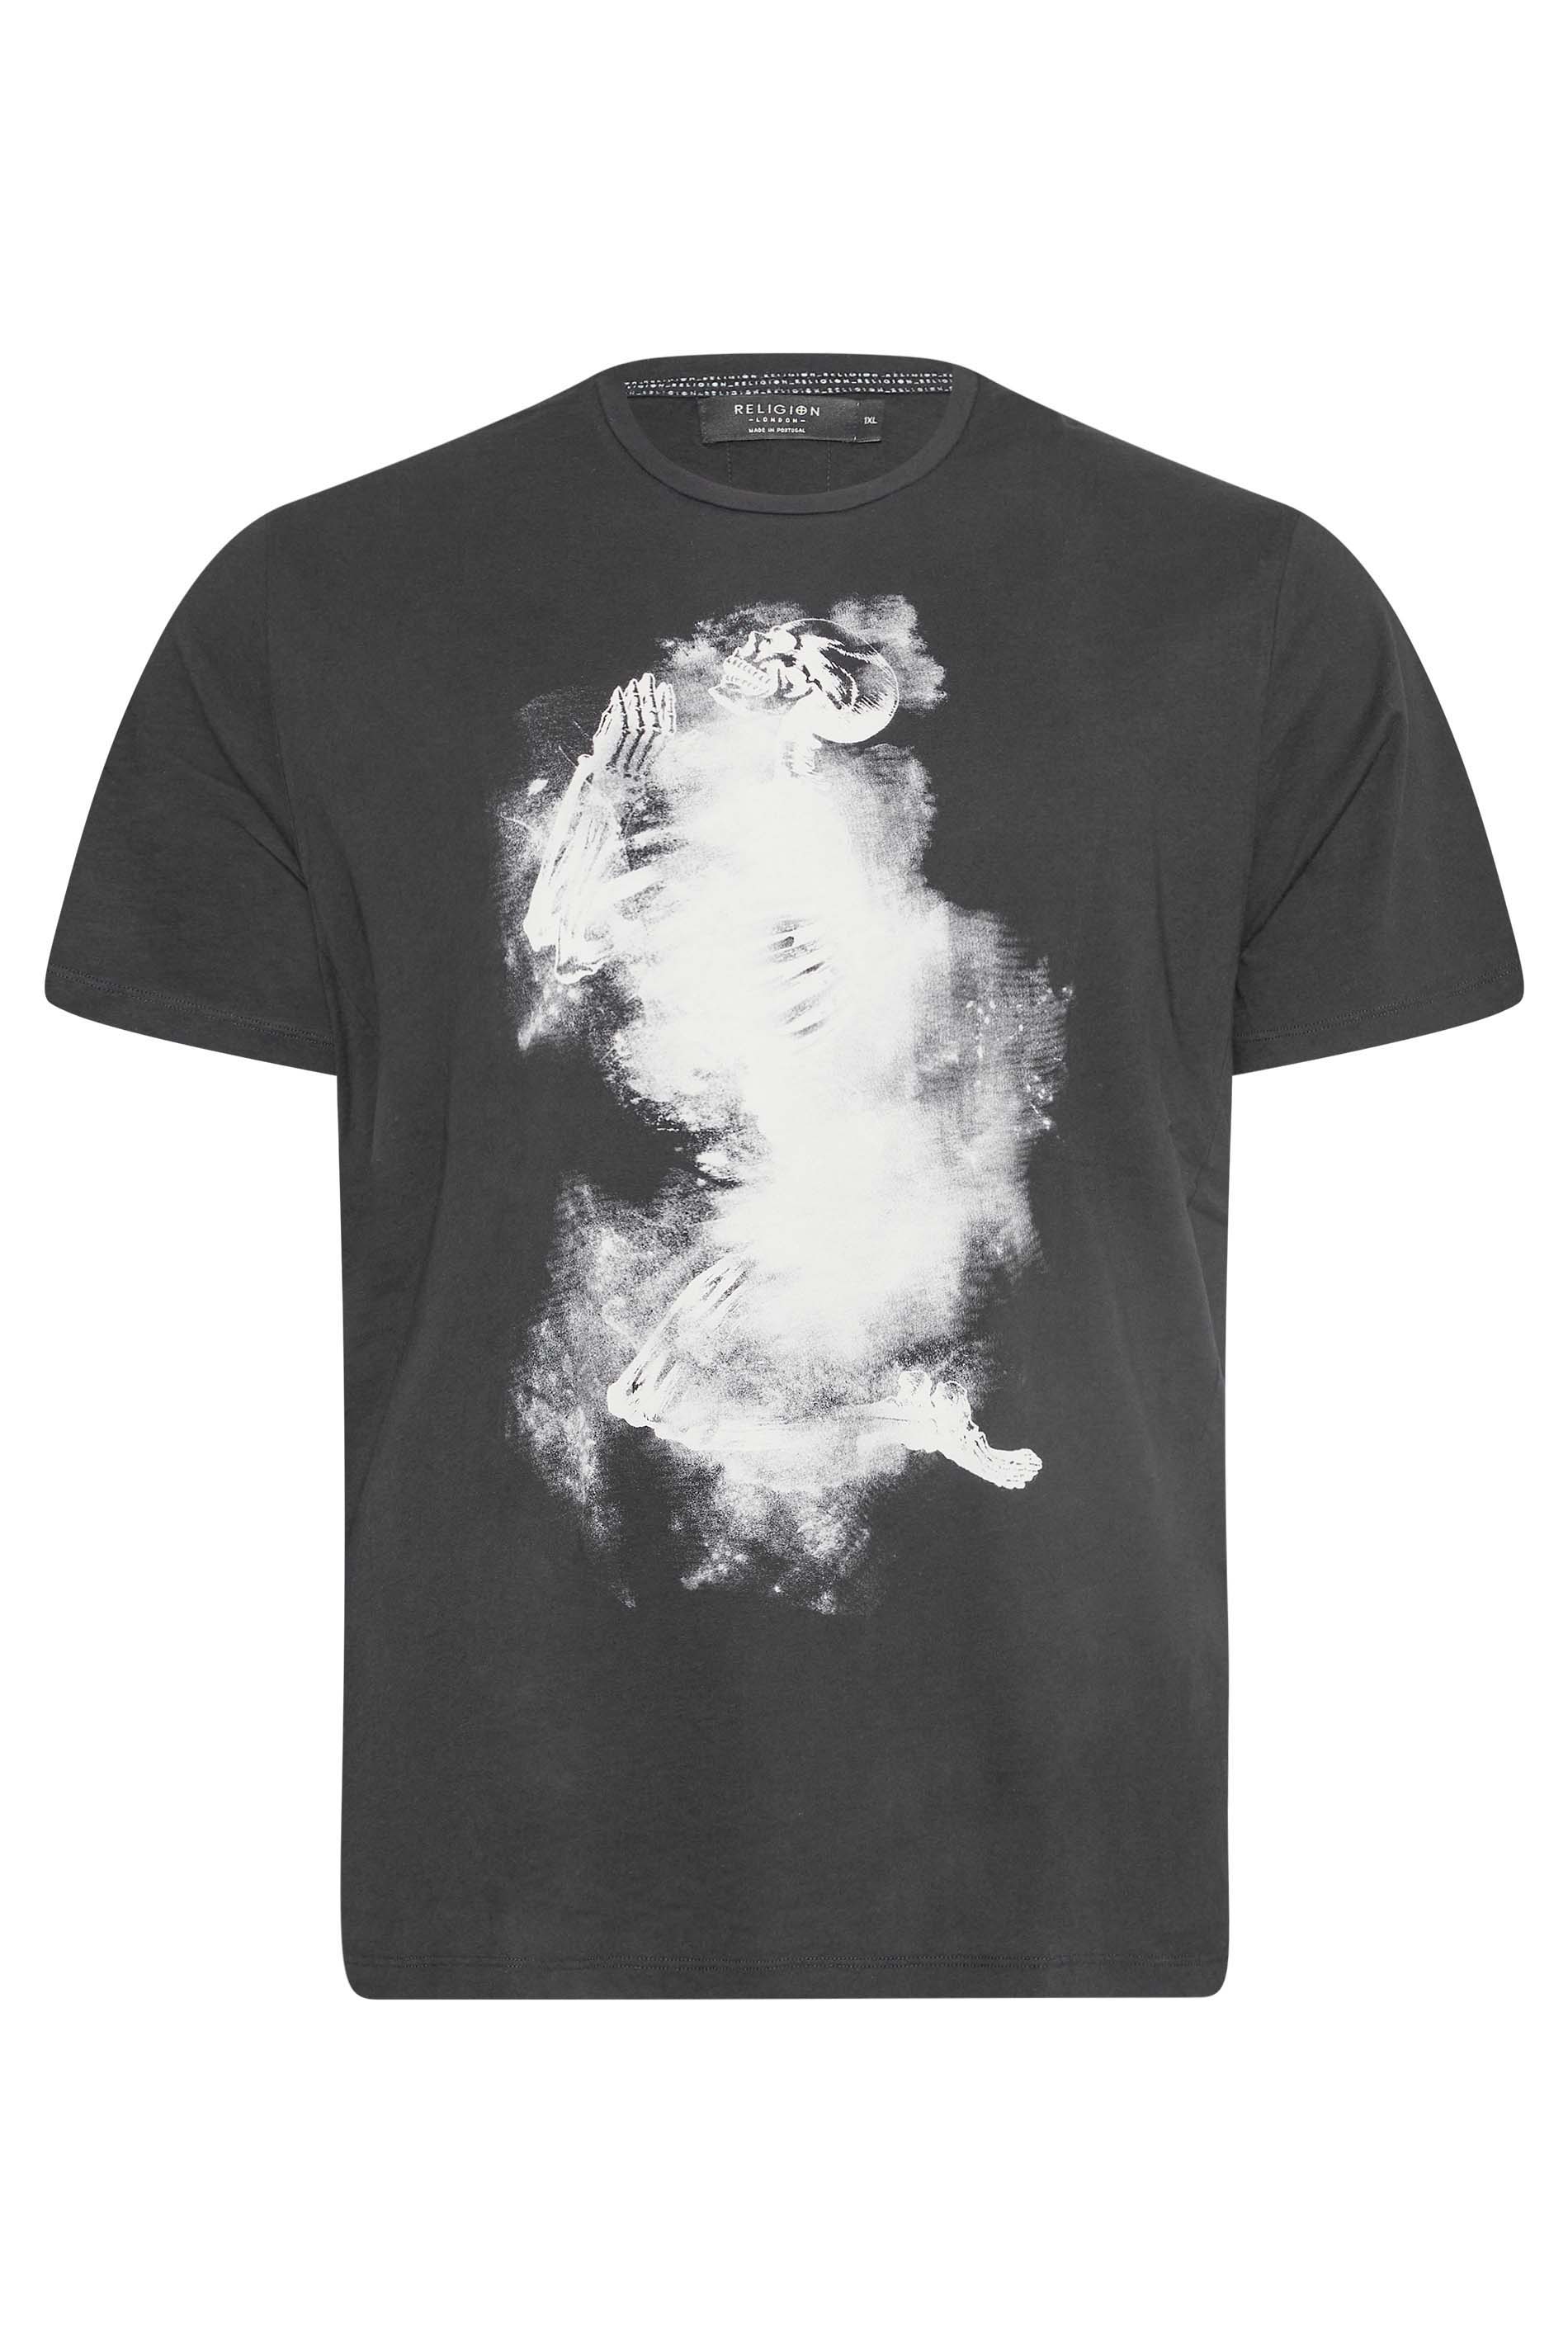 RELIGION Big & Tall Black Skeleton Cloudy T-Shirt | BadRhino